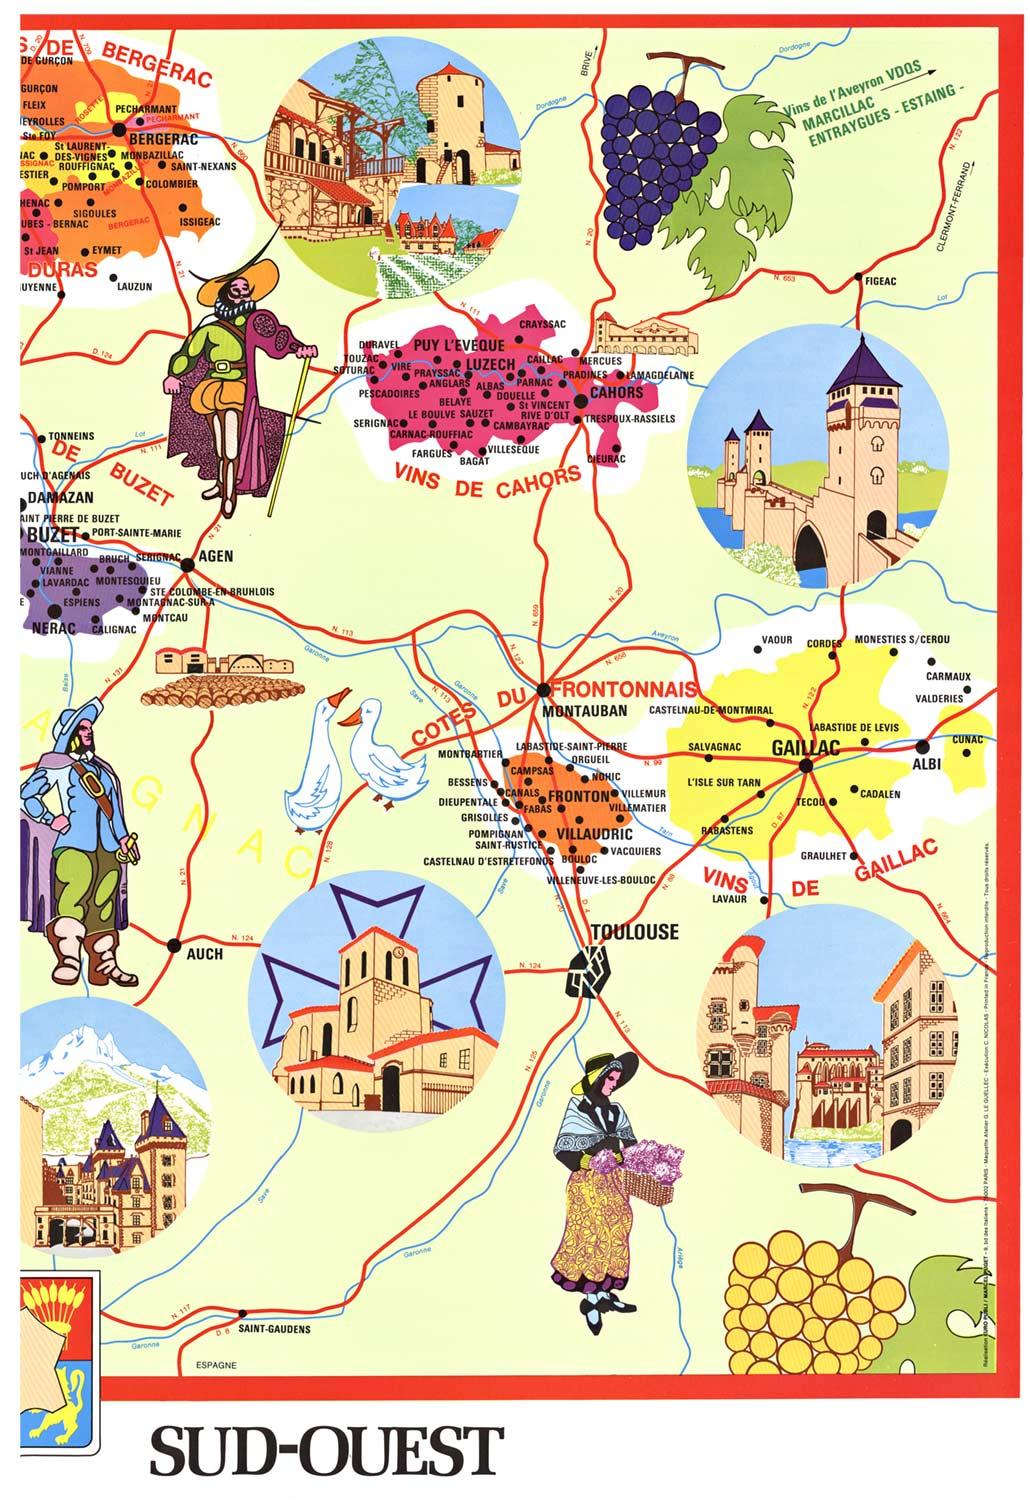 Original Vins du Sud-Ouest vintage French wine map poster - Print by G. Le Guellec